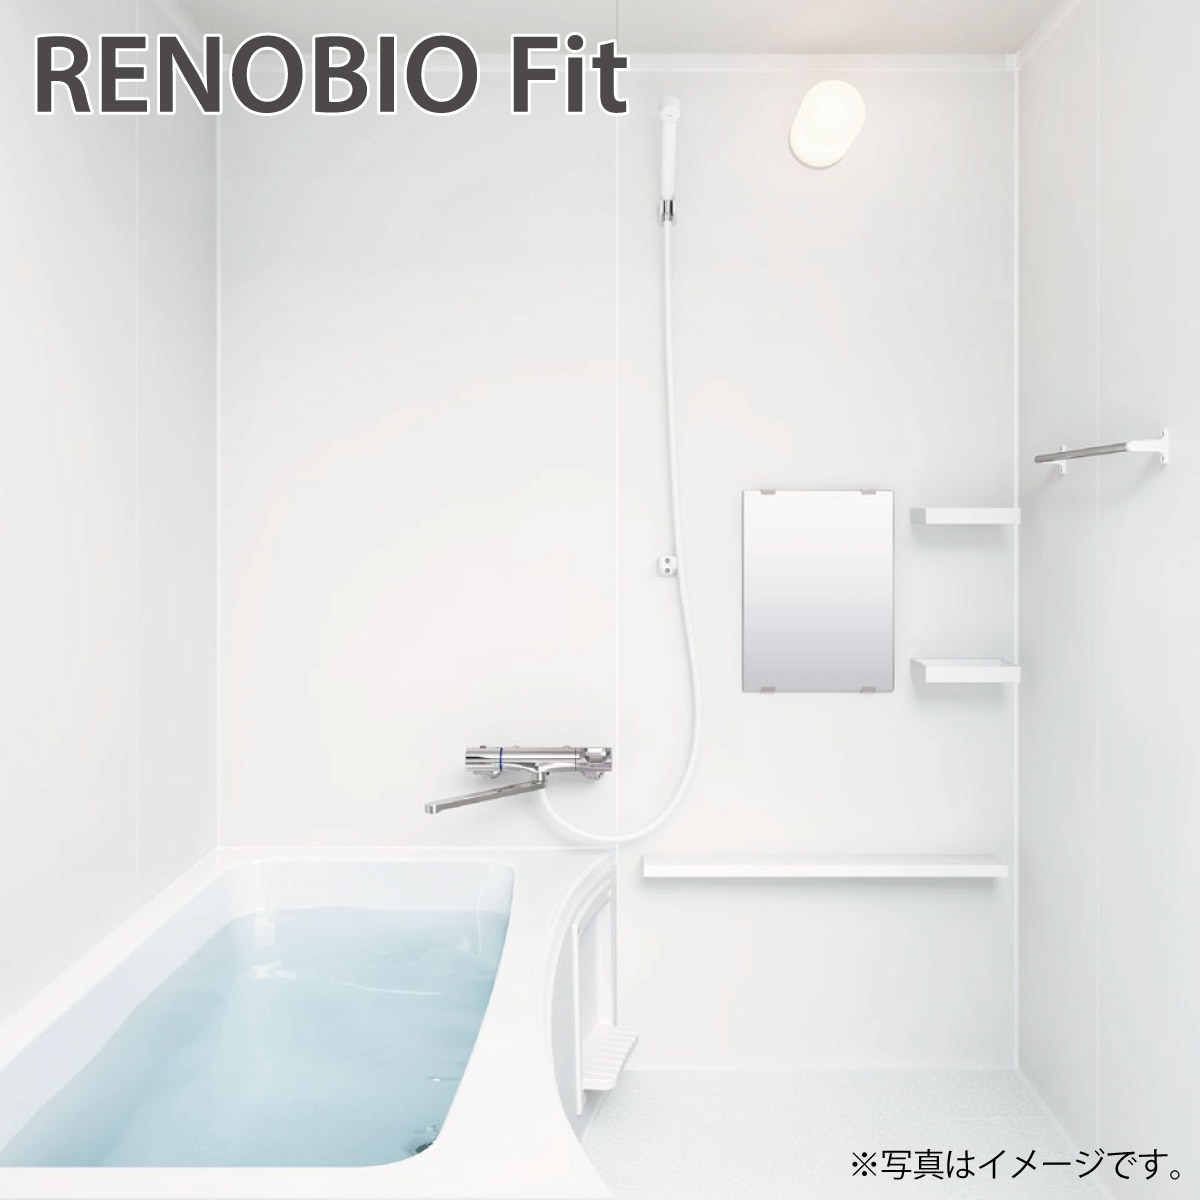 リクシル リノビオ フィット 1116 Tタイプ 標準仕様 マンション用システムバスルーム | クローバーマート